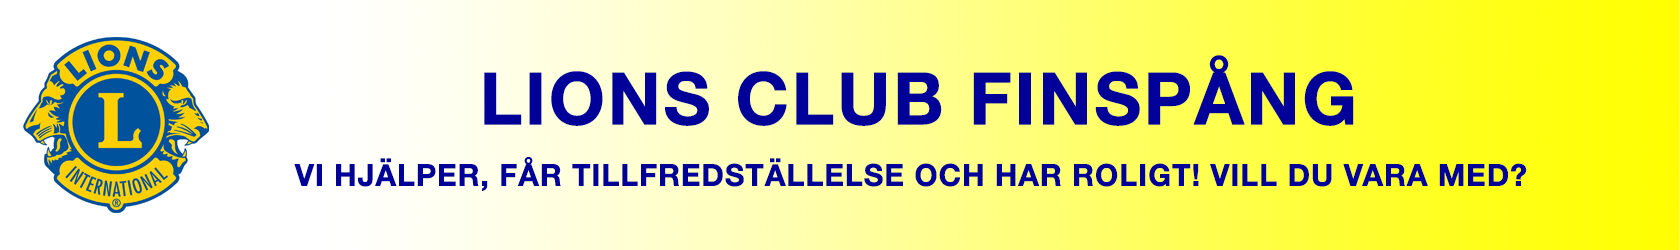 Lions Club Finspång